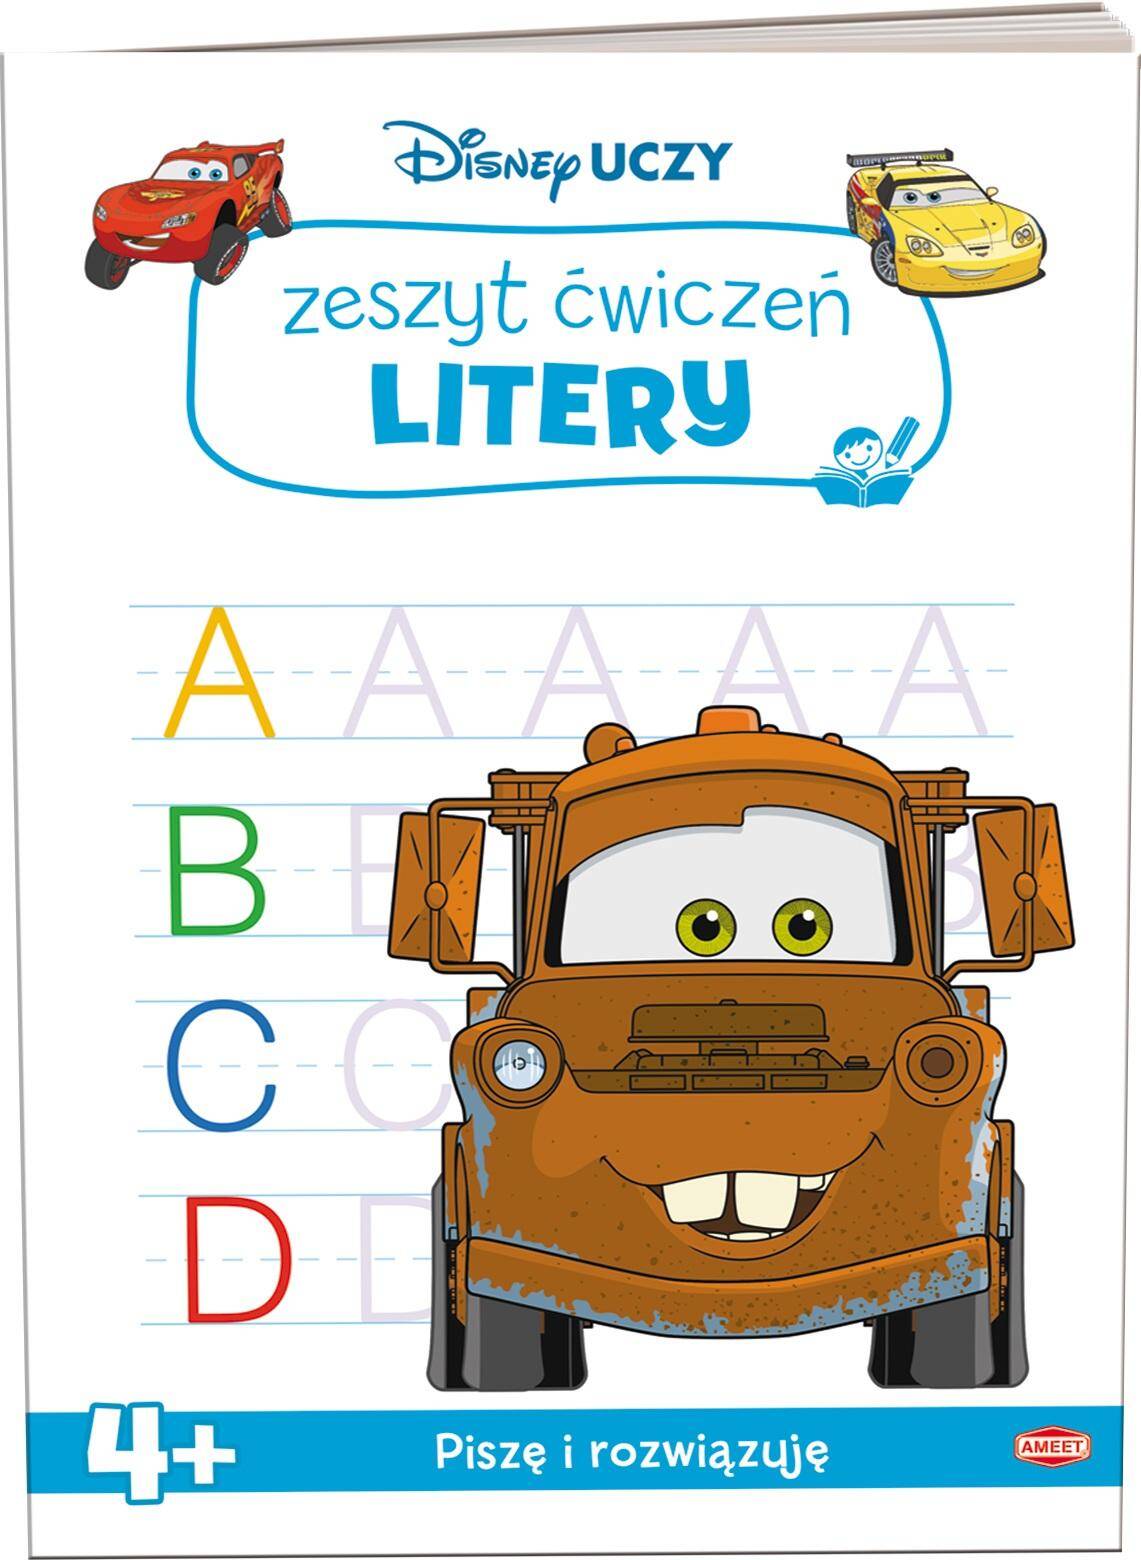 Disney uczy Auta Litery UDZ-9305